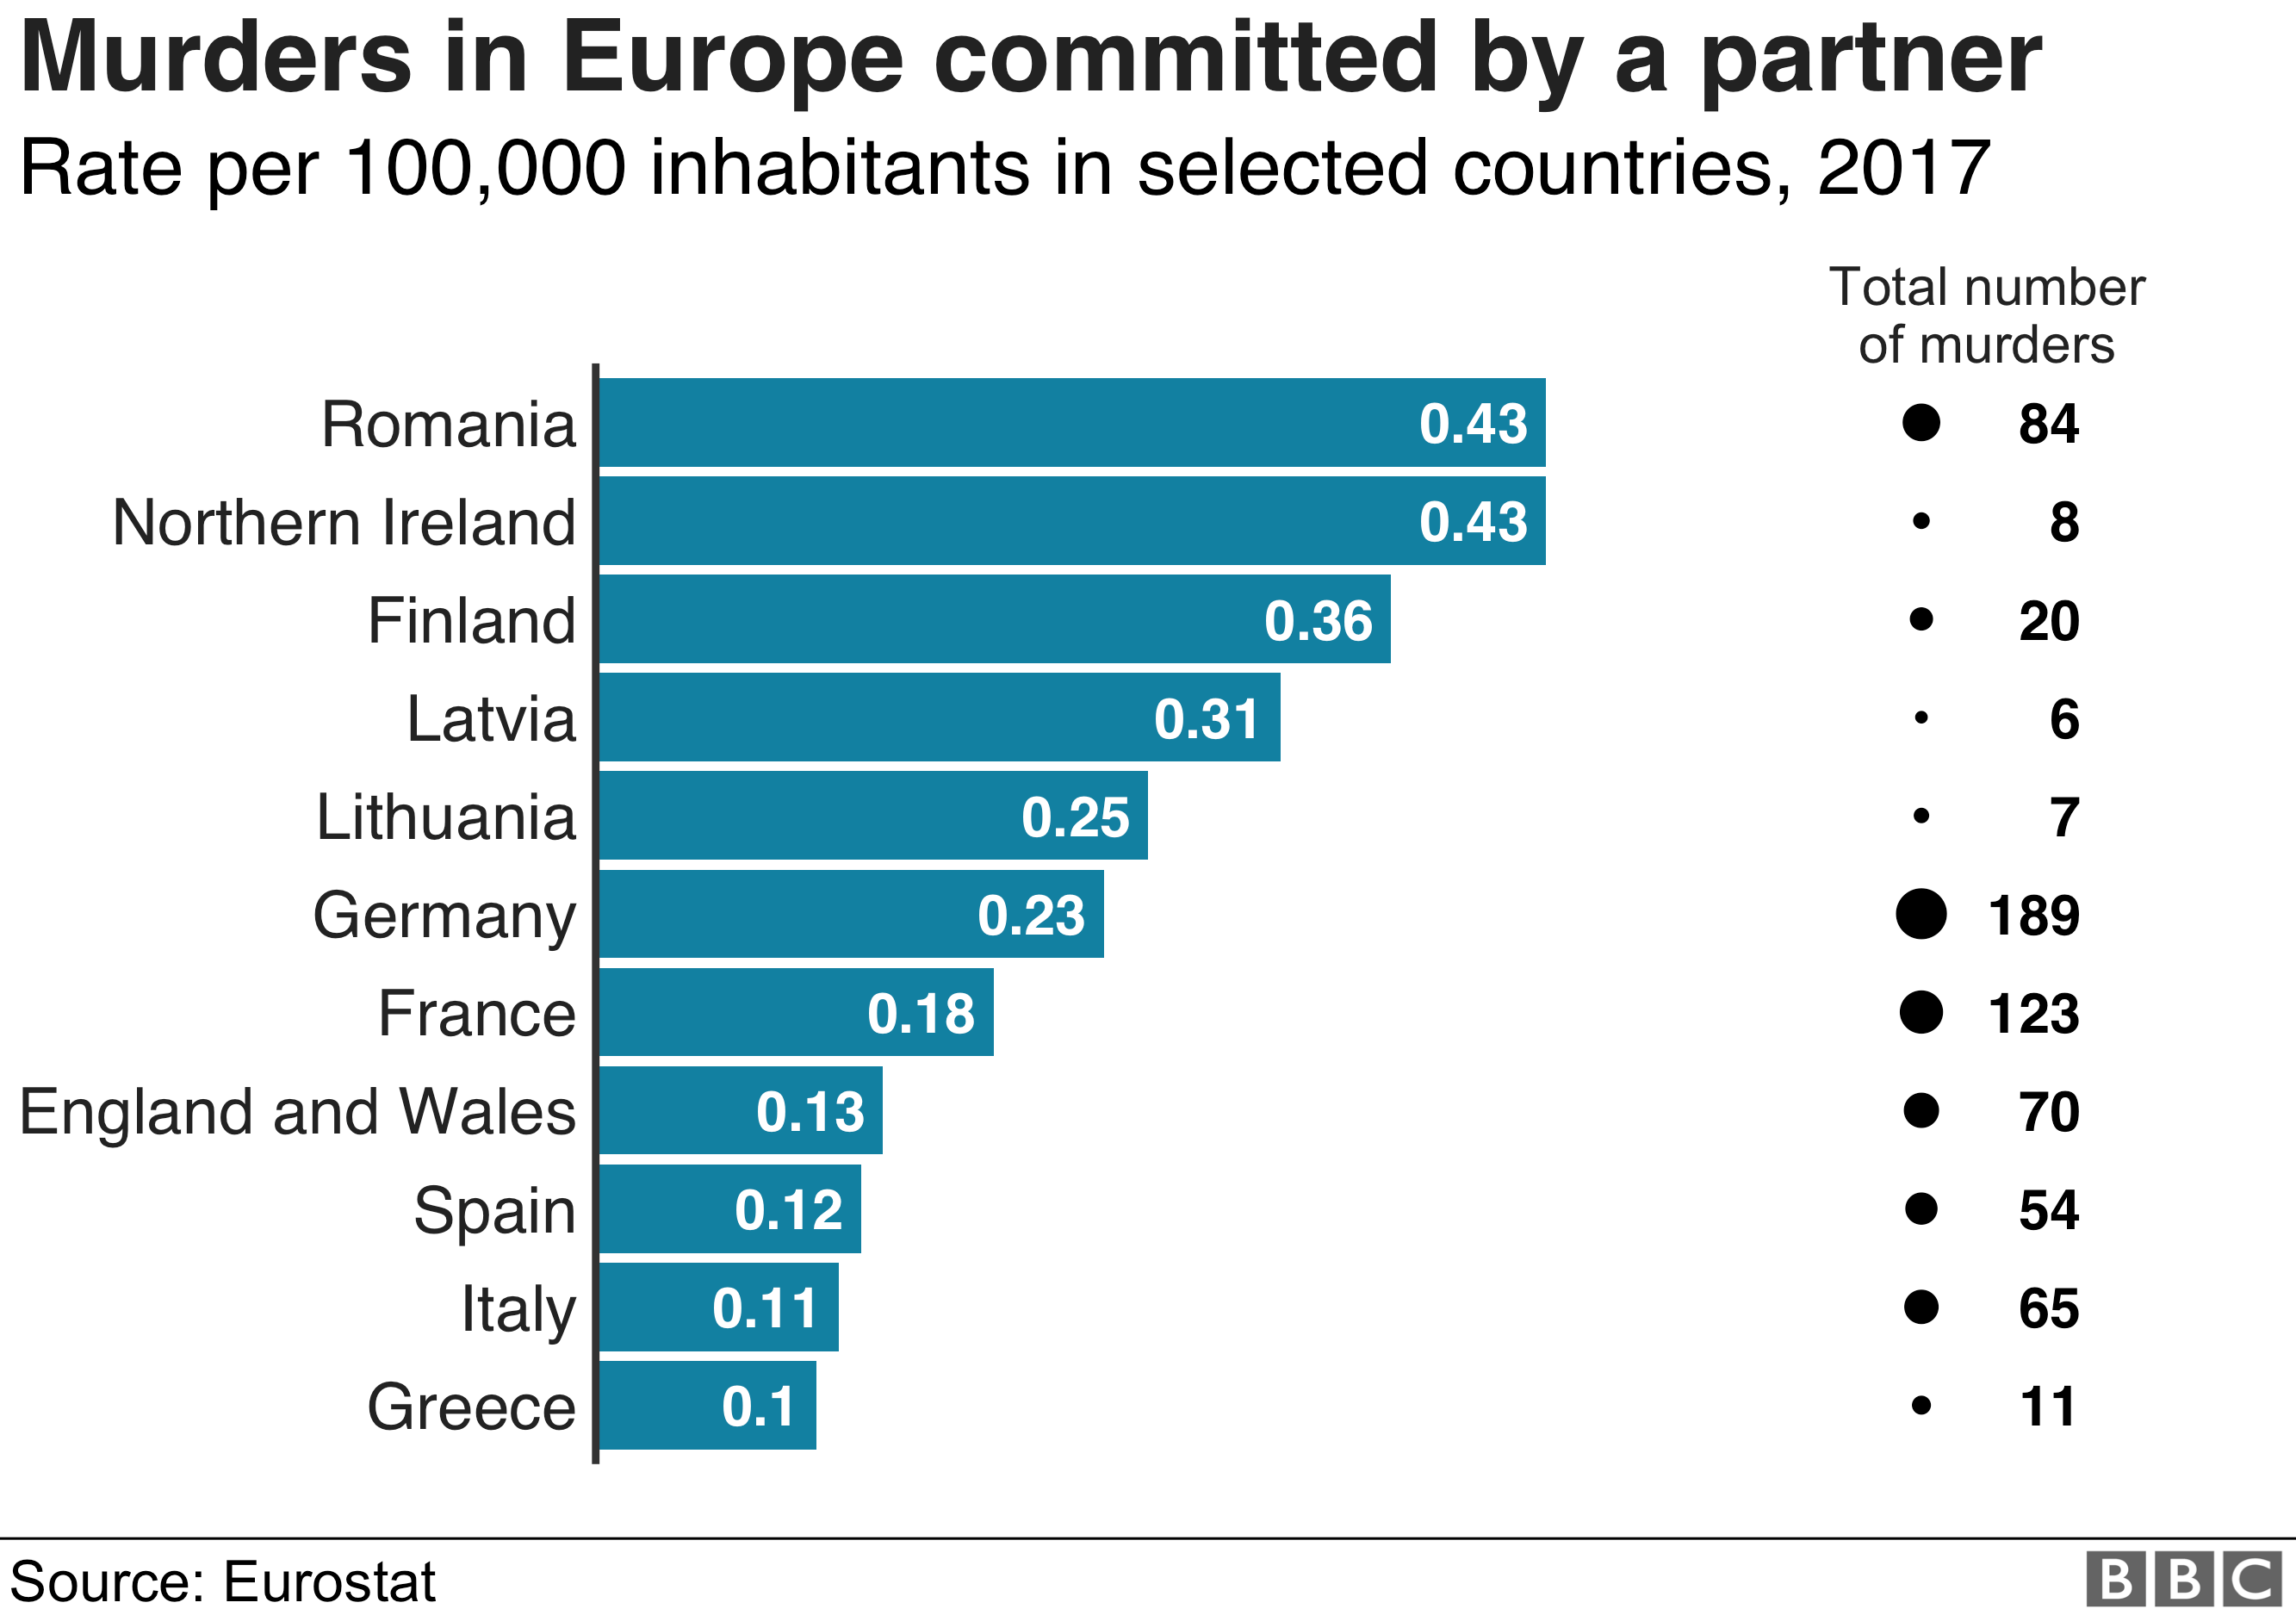 График, показывающий количество убийств, совершенных партнером в ряде европейских стран